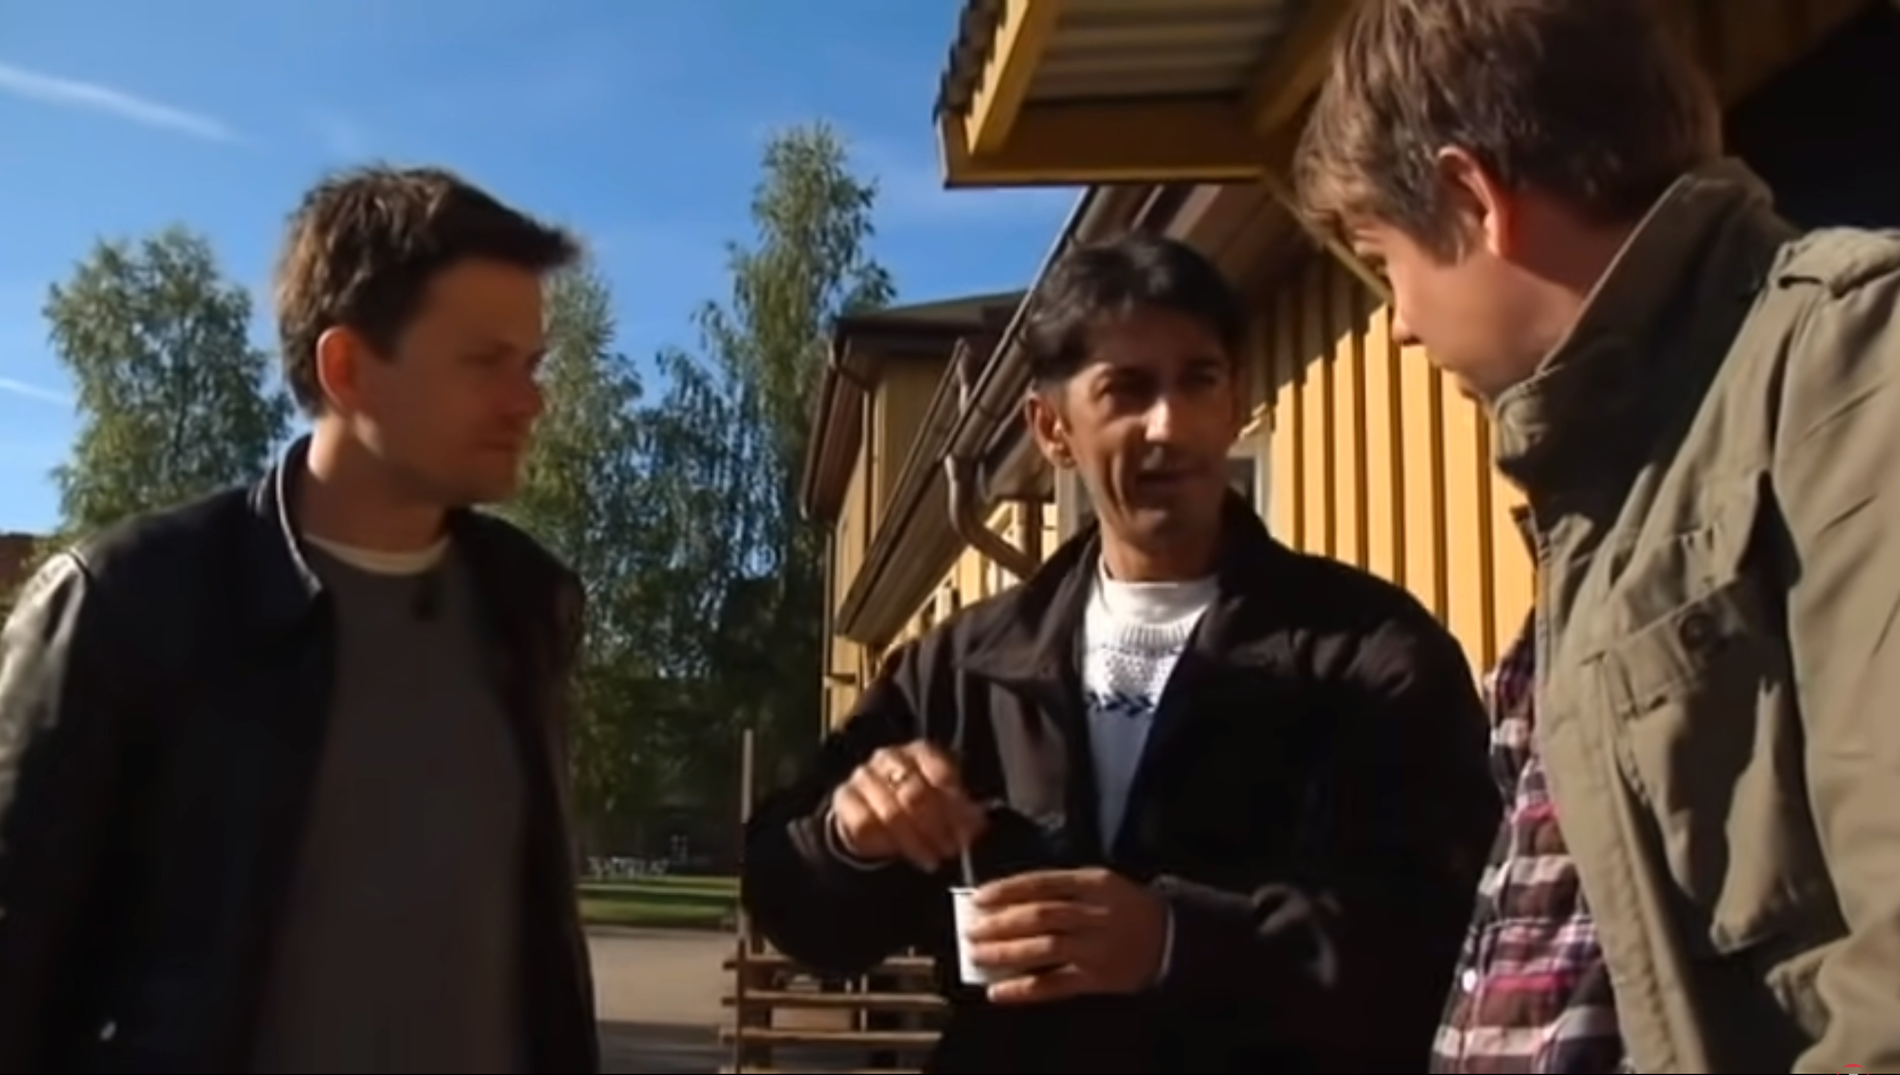 Ismet ”Körkortsturken” Music med Filip och Fredrik.